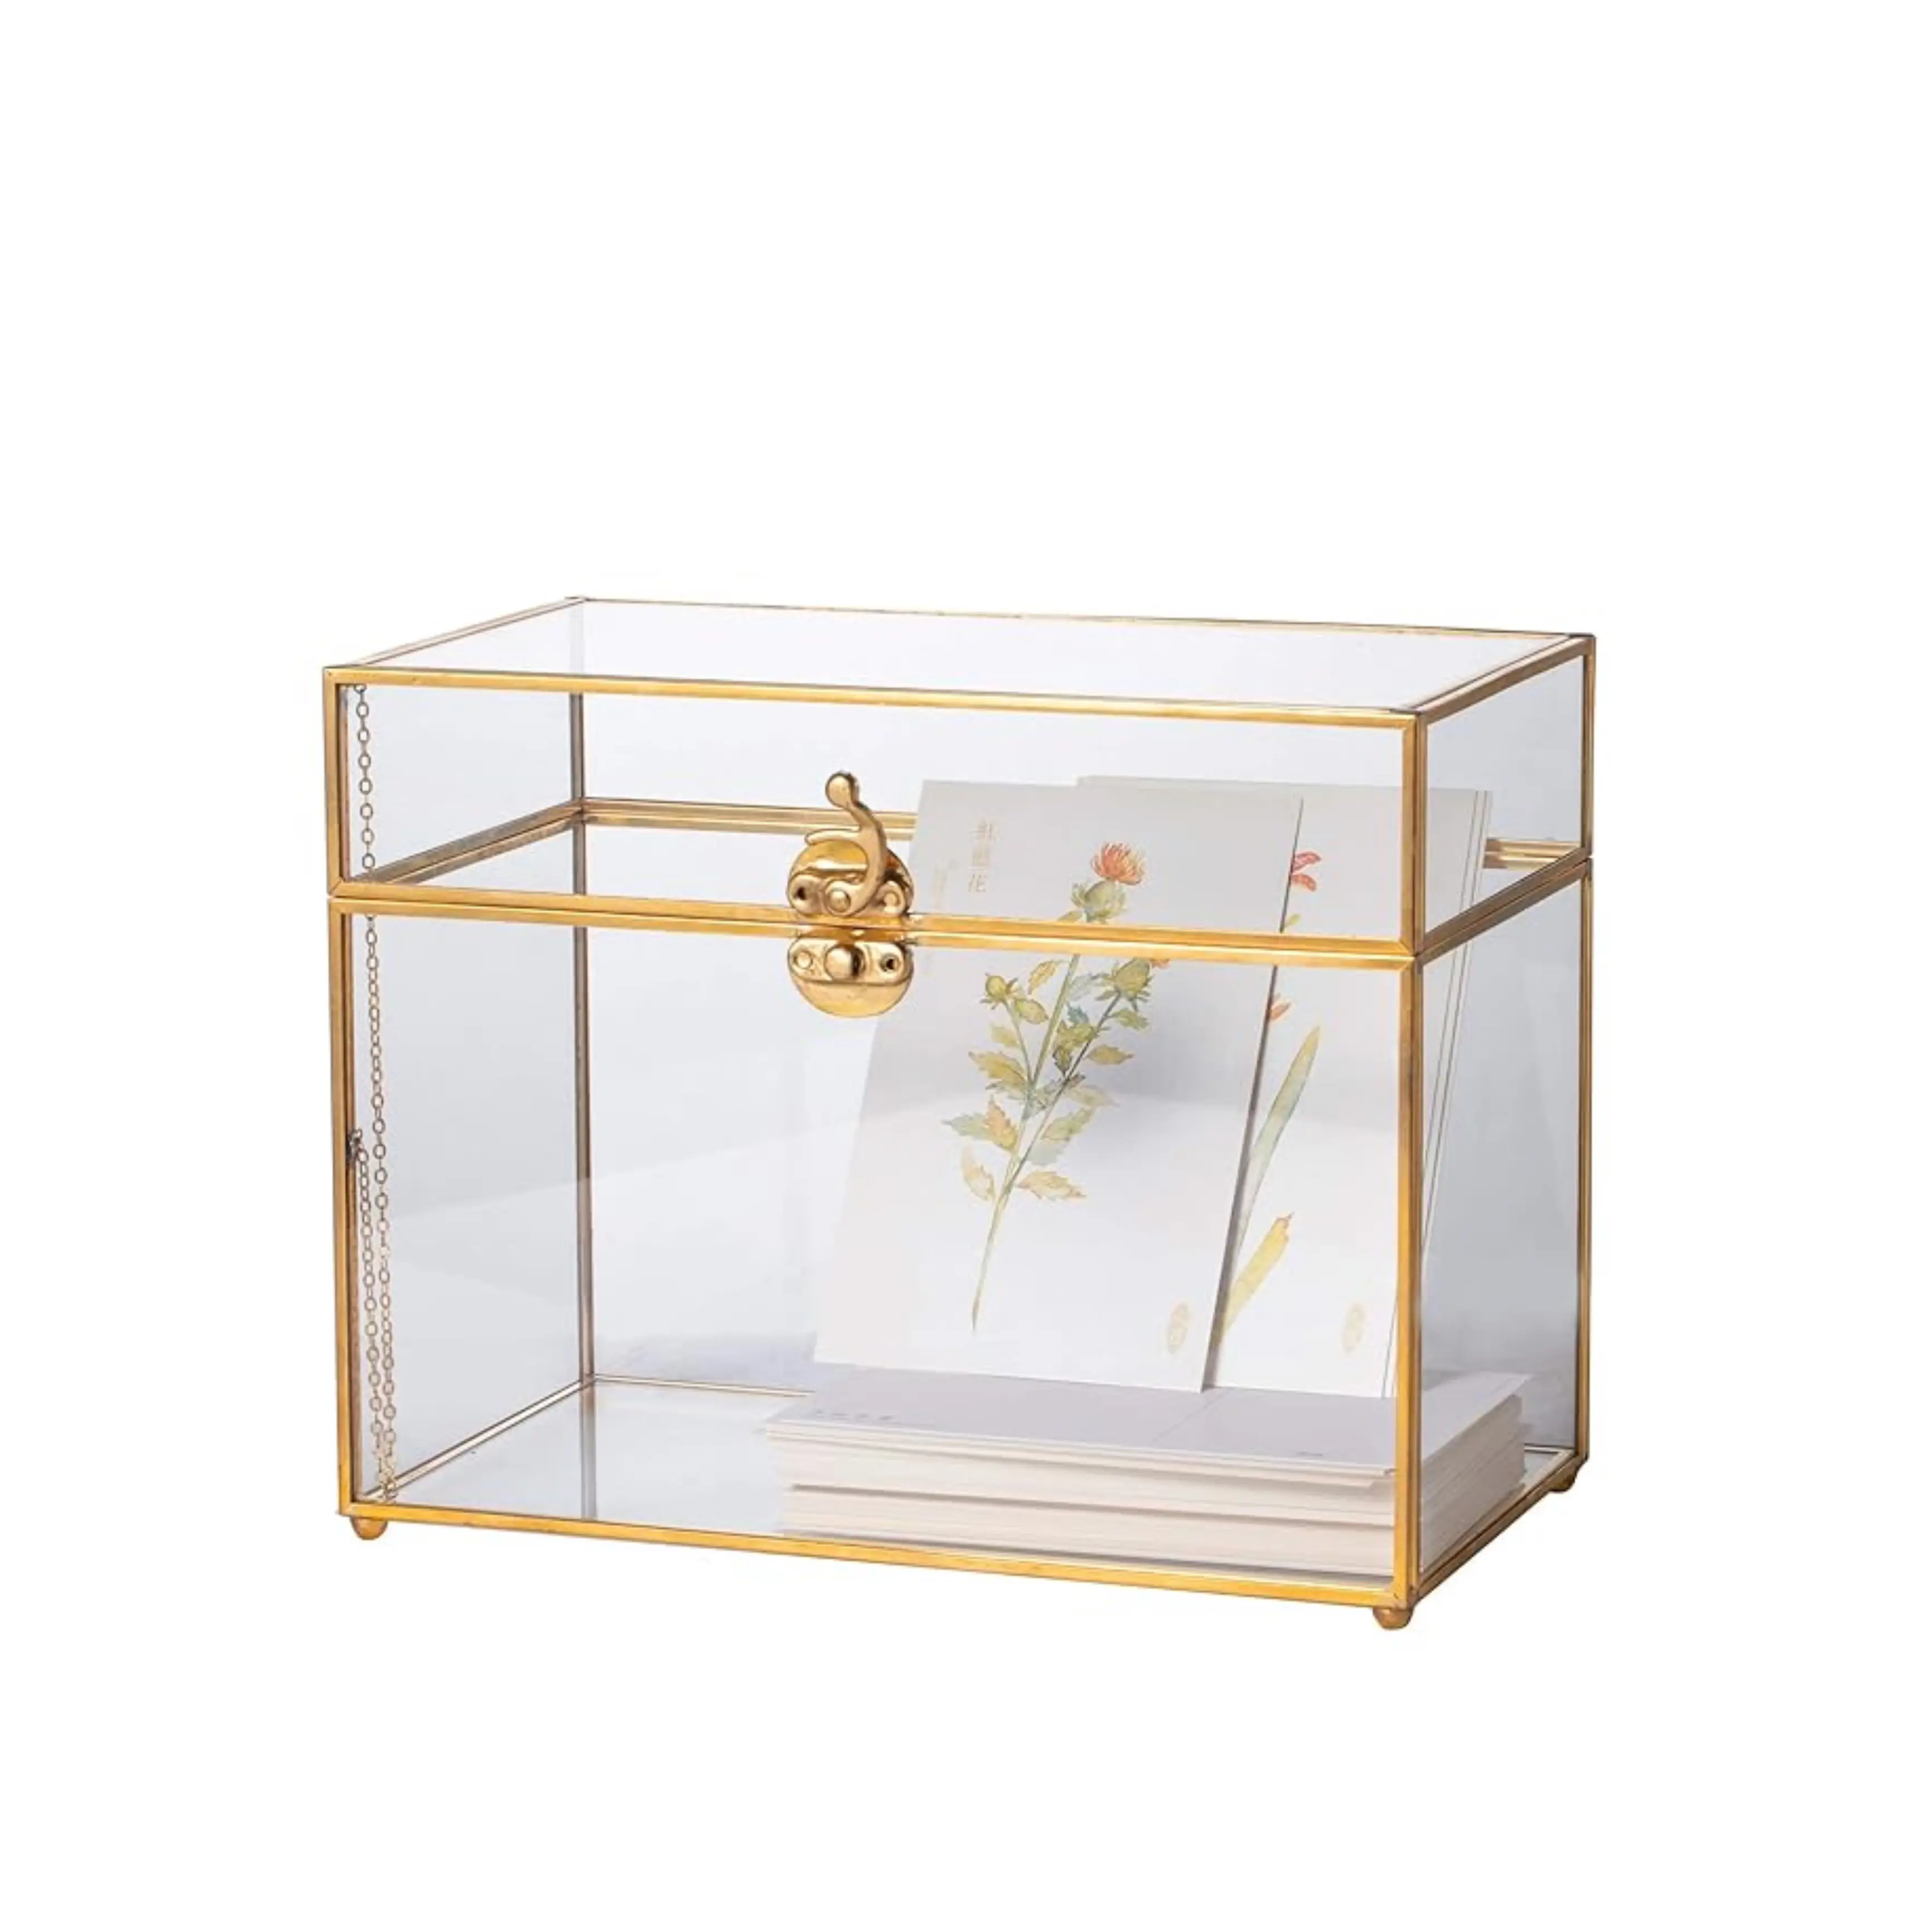 真ちゅう製の金属フレーム付きの豪華な装飾ガラス収納ボックス売れ筋ジュエリーボックスケース